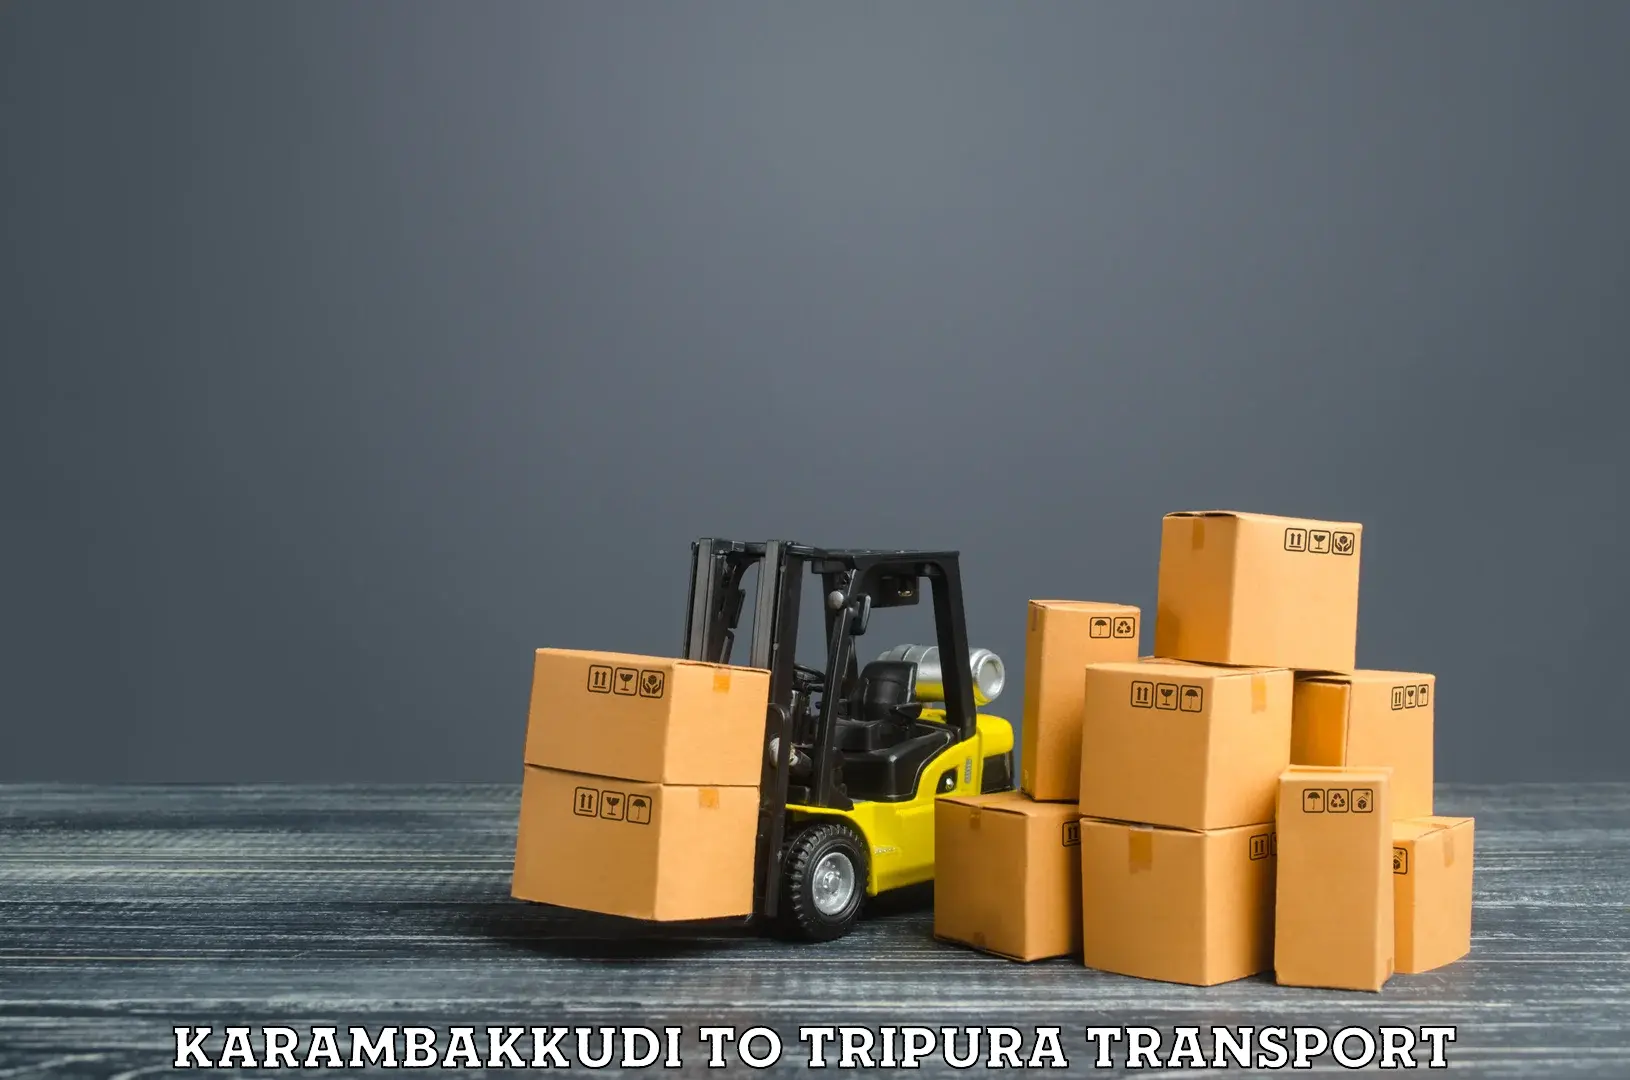 Pick up transport service Karambakkudi to Udaipur Tripura